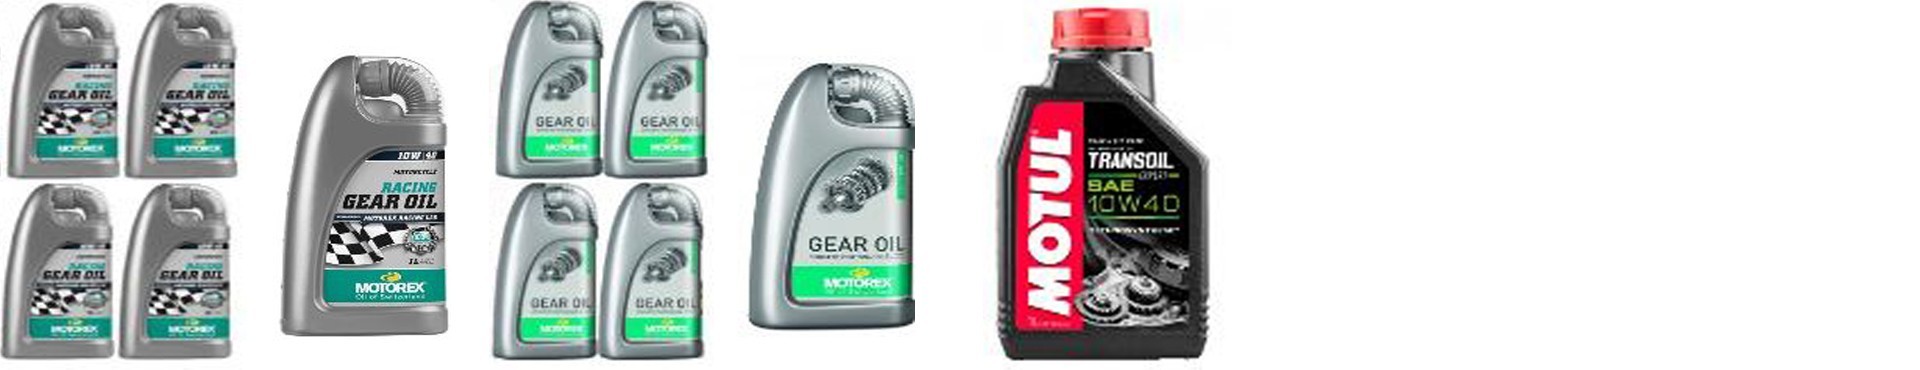 lubricantes de transmisión de recambios para motos las mejores marcas